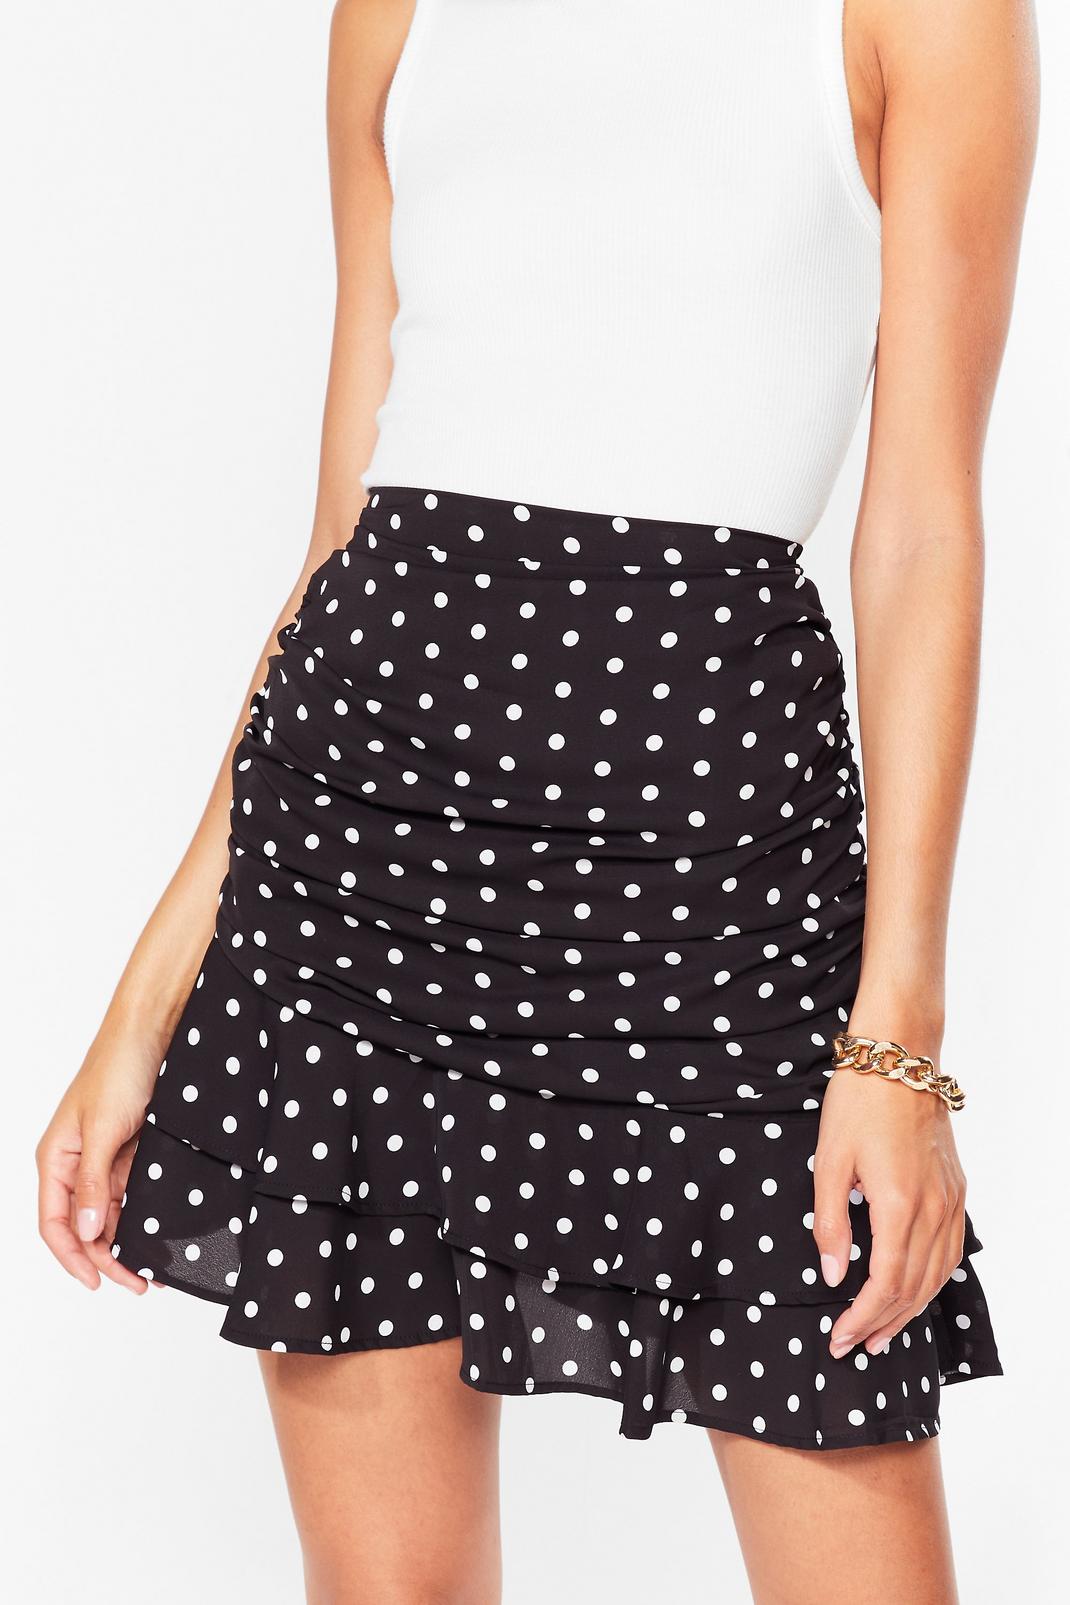 Black Polka Dot Ruched Ruffle Mini Skirt image number 1